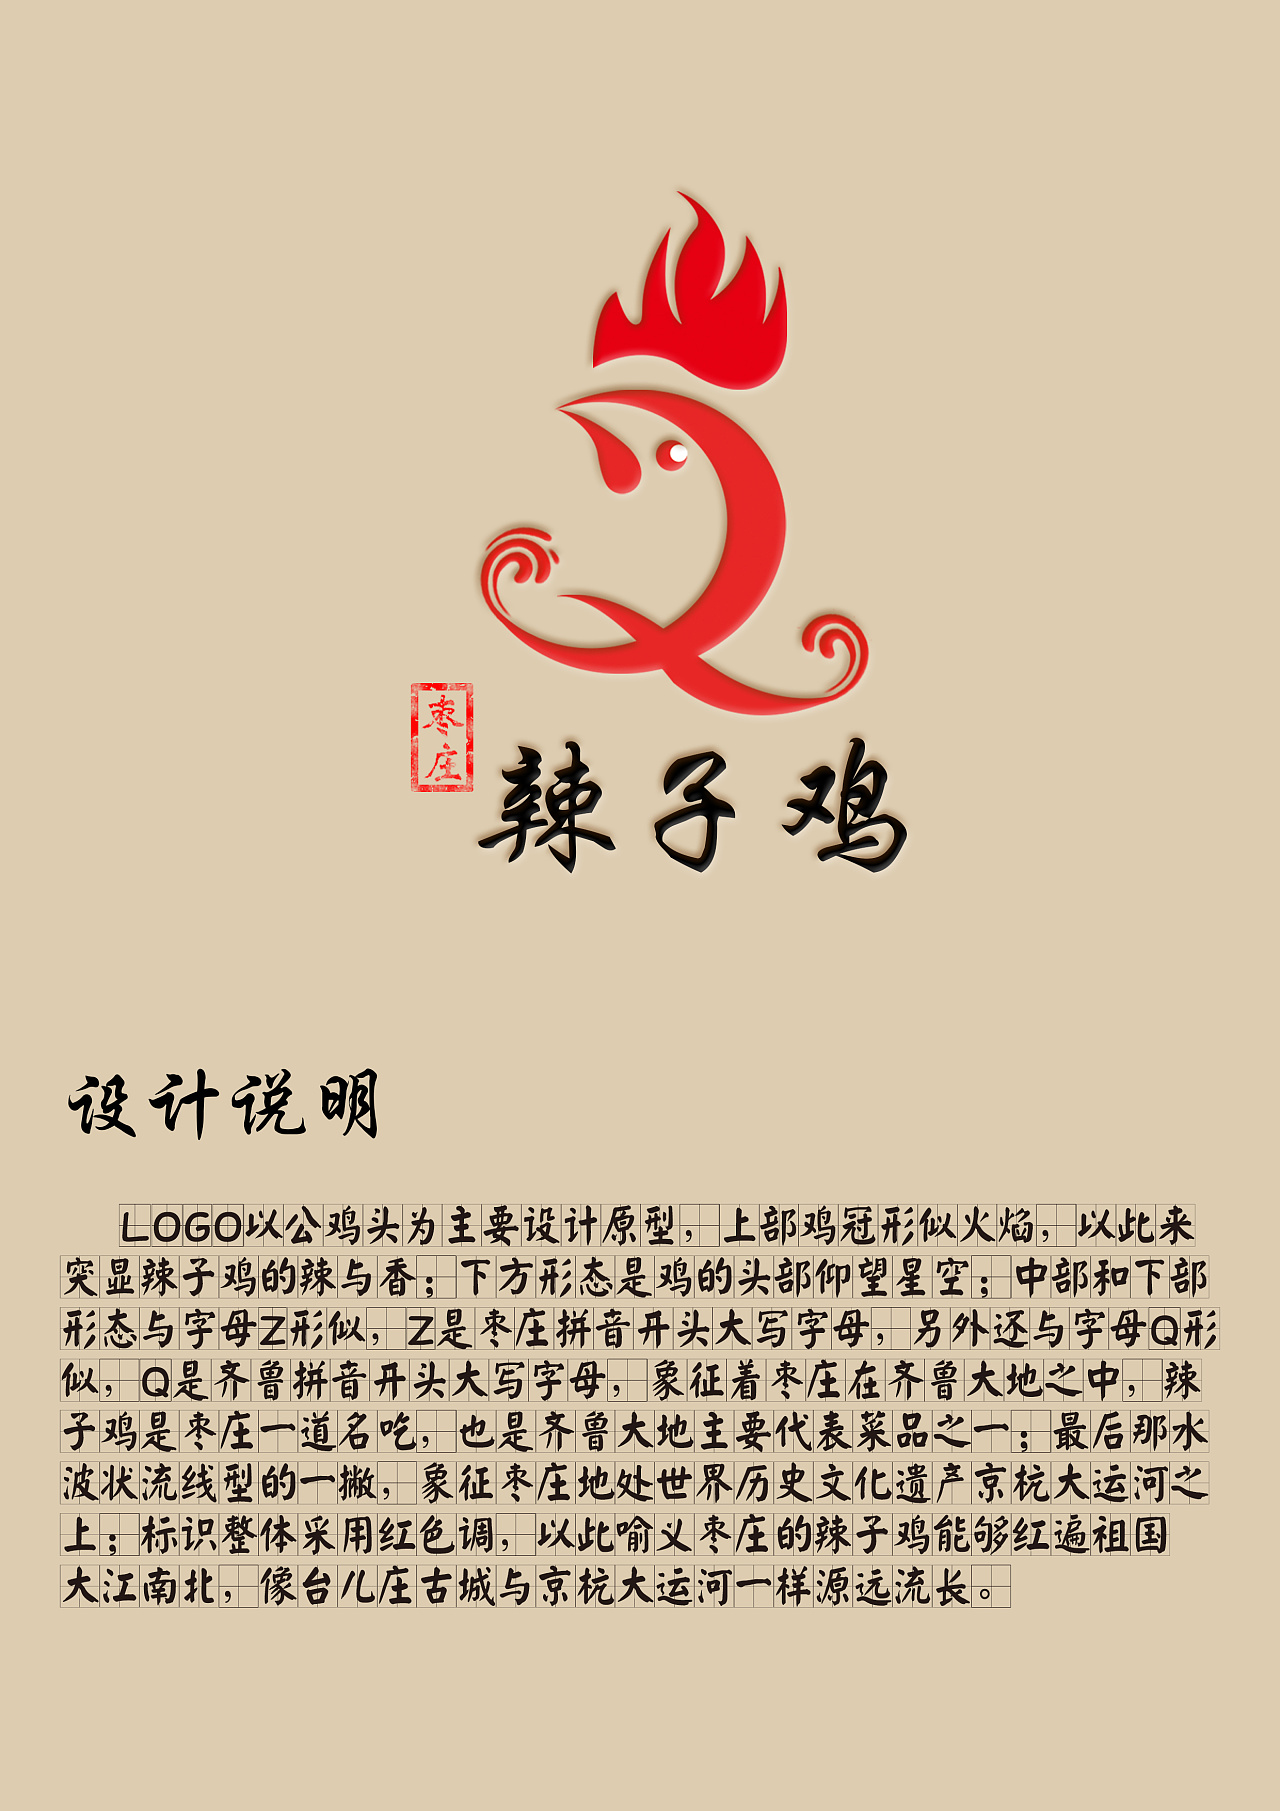 山东枣庄地区辣子鸡logo设计